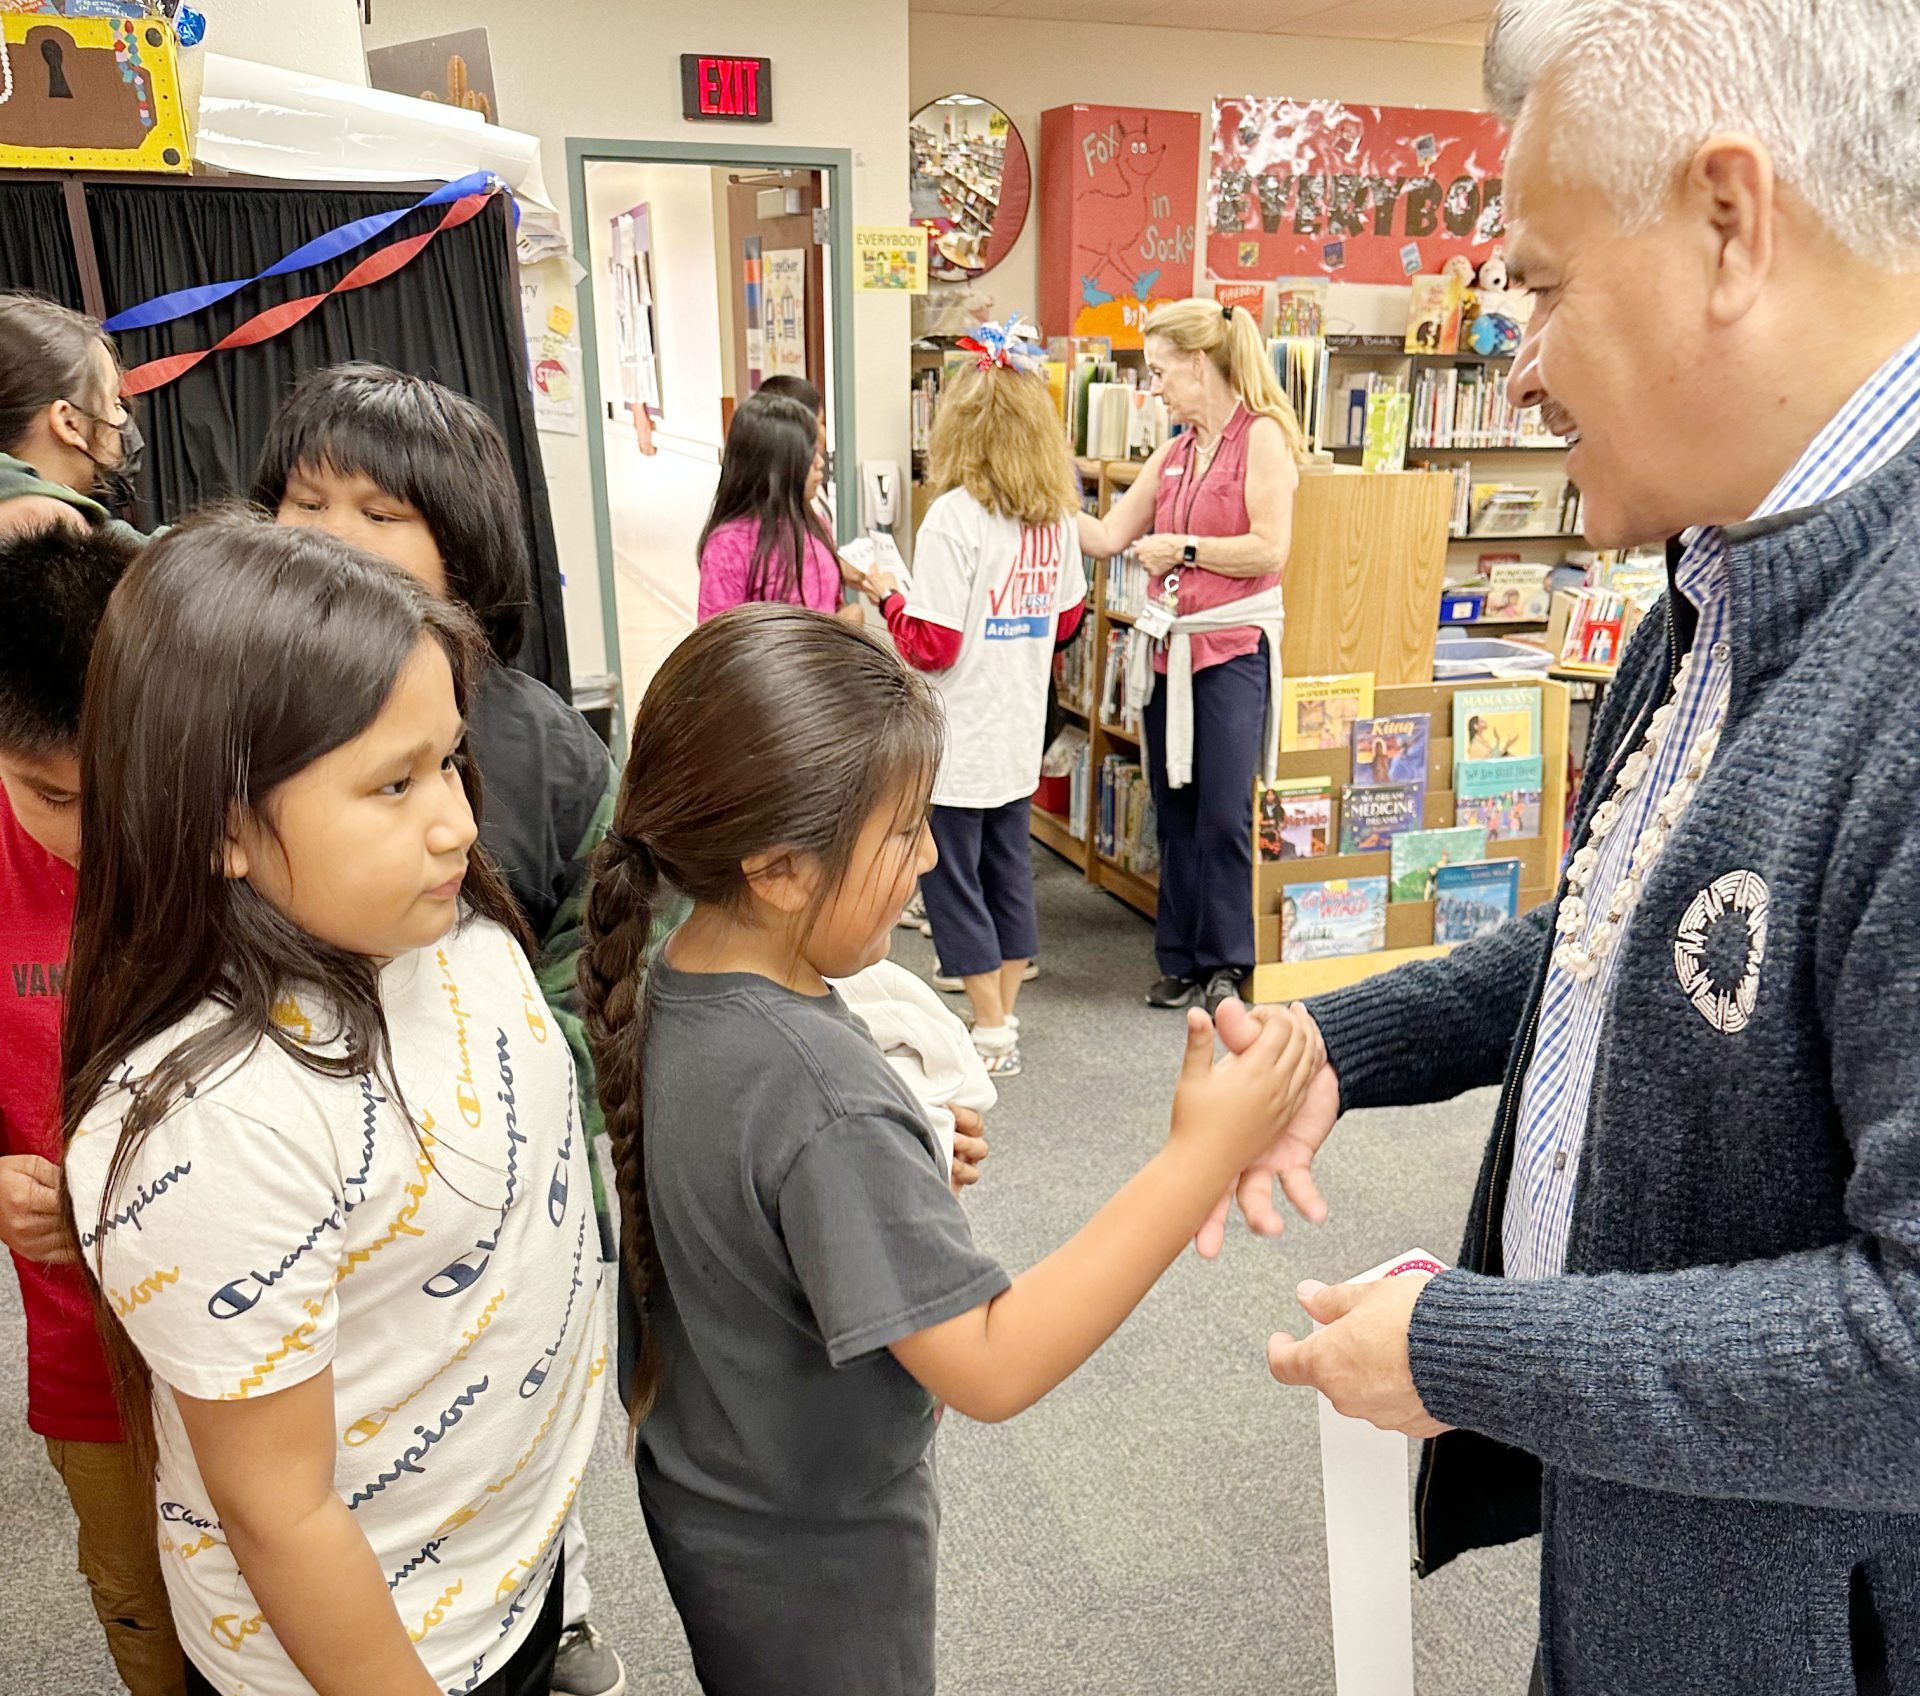 Kids Vote at Salt River Schools for 2022 General Election